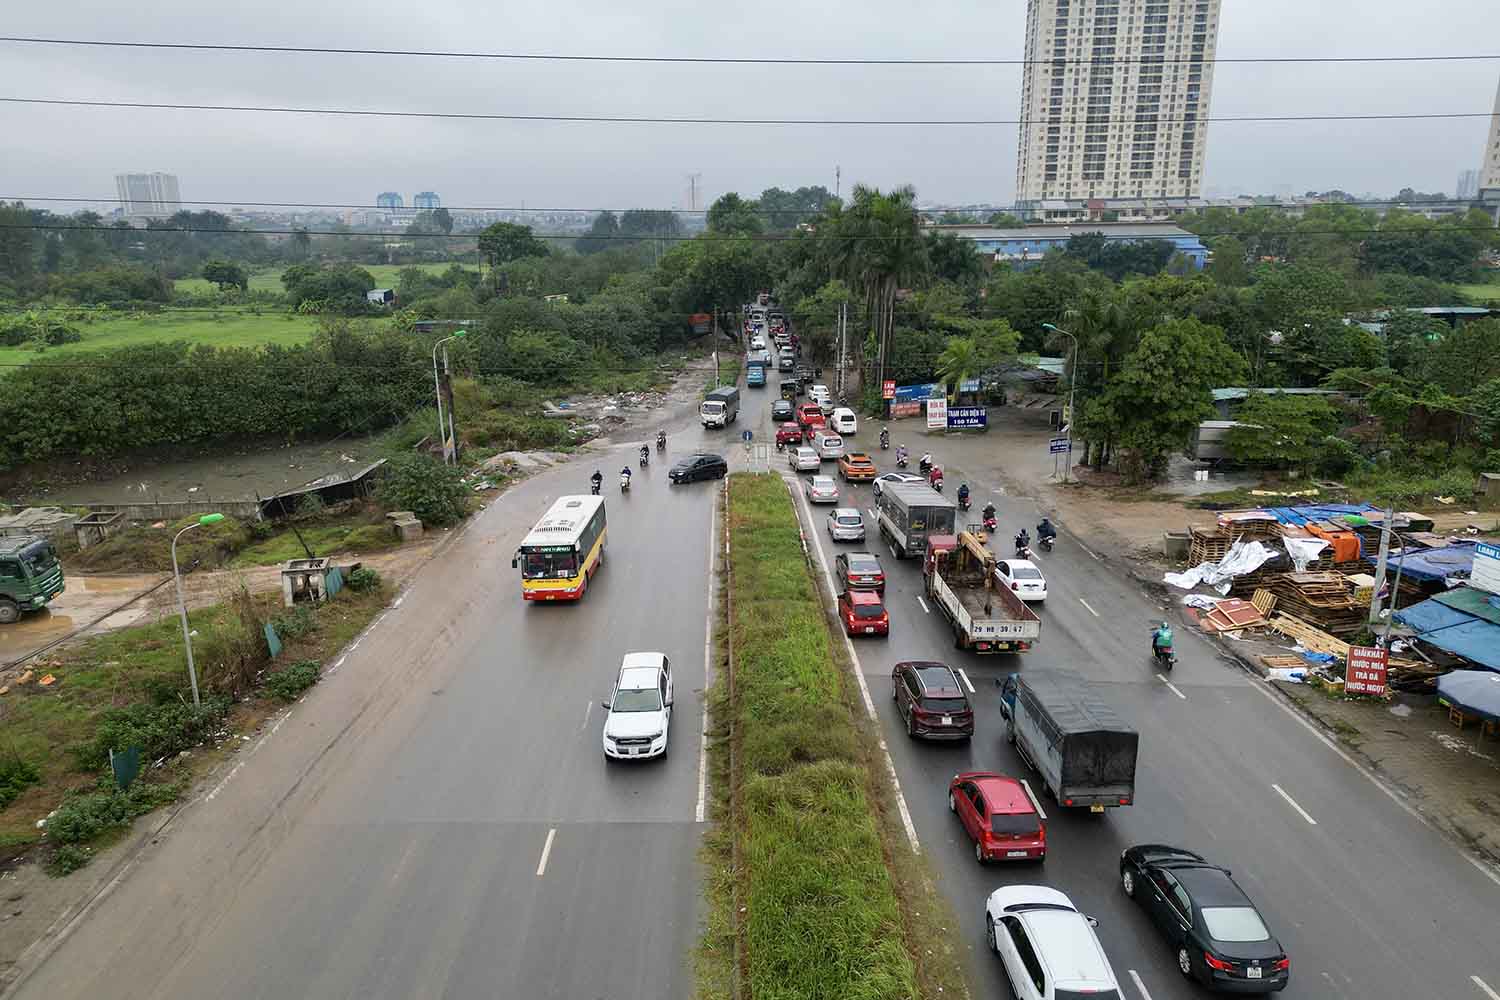 Theo tìm hiểu của Lao Động, để giải quyết “điểm đen” tai nạn giao thông tại đây, HĐND TP Hà Nội đã thống nhất thông qua chủ trương đầu tư, nâng cấp mở rộng đường 70 (đoạn từ đường Trịnh Văn Bô đến hết quận Nam Từ Liêm).